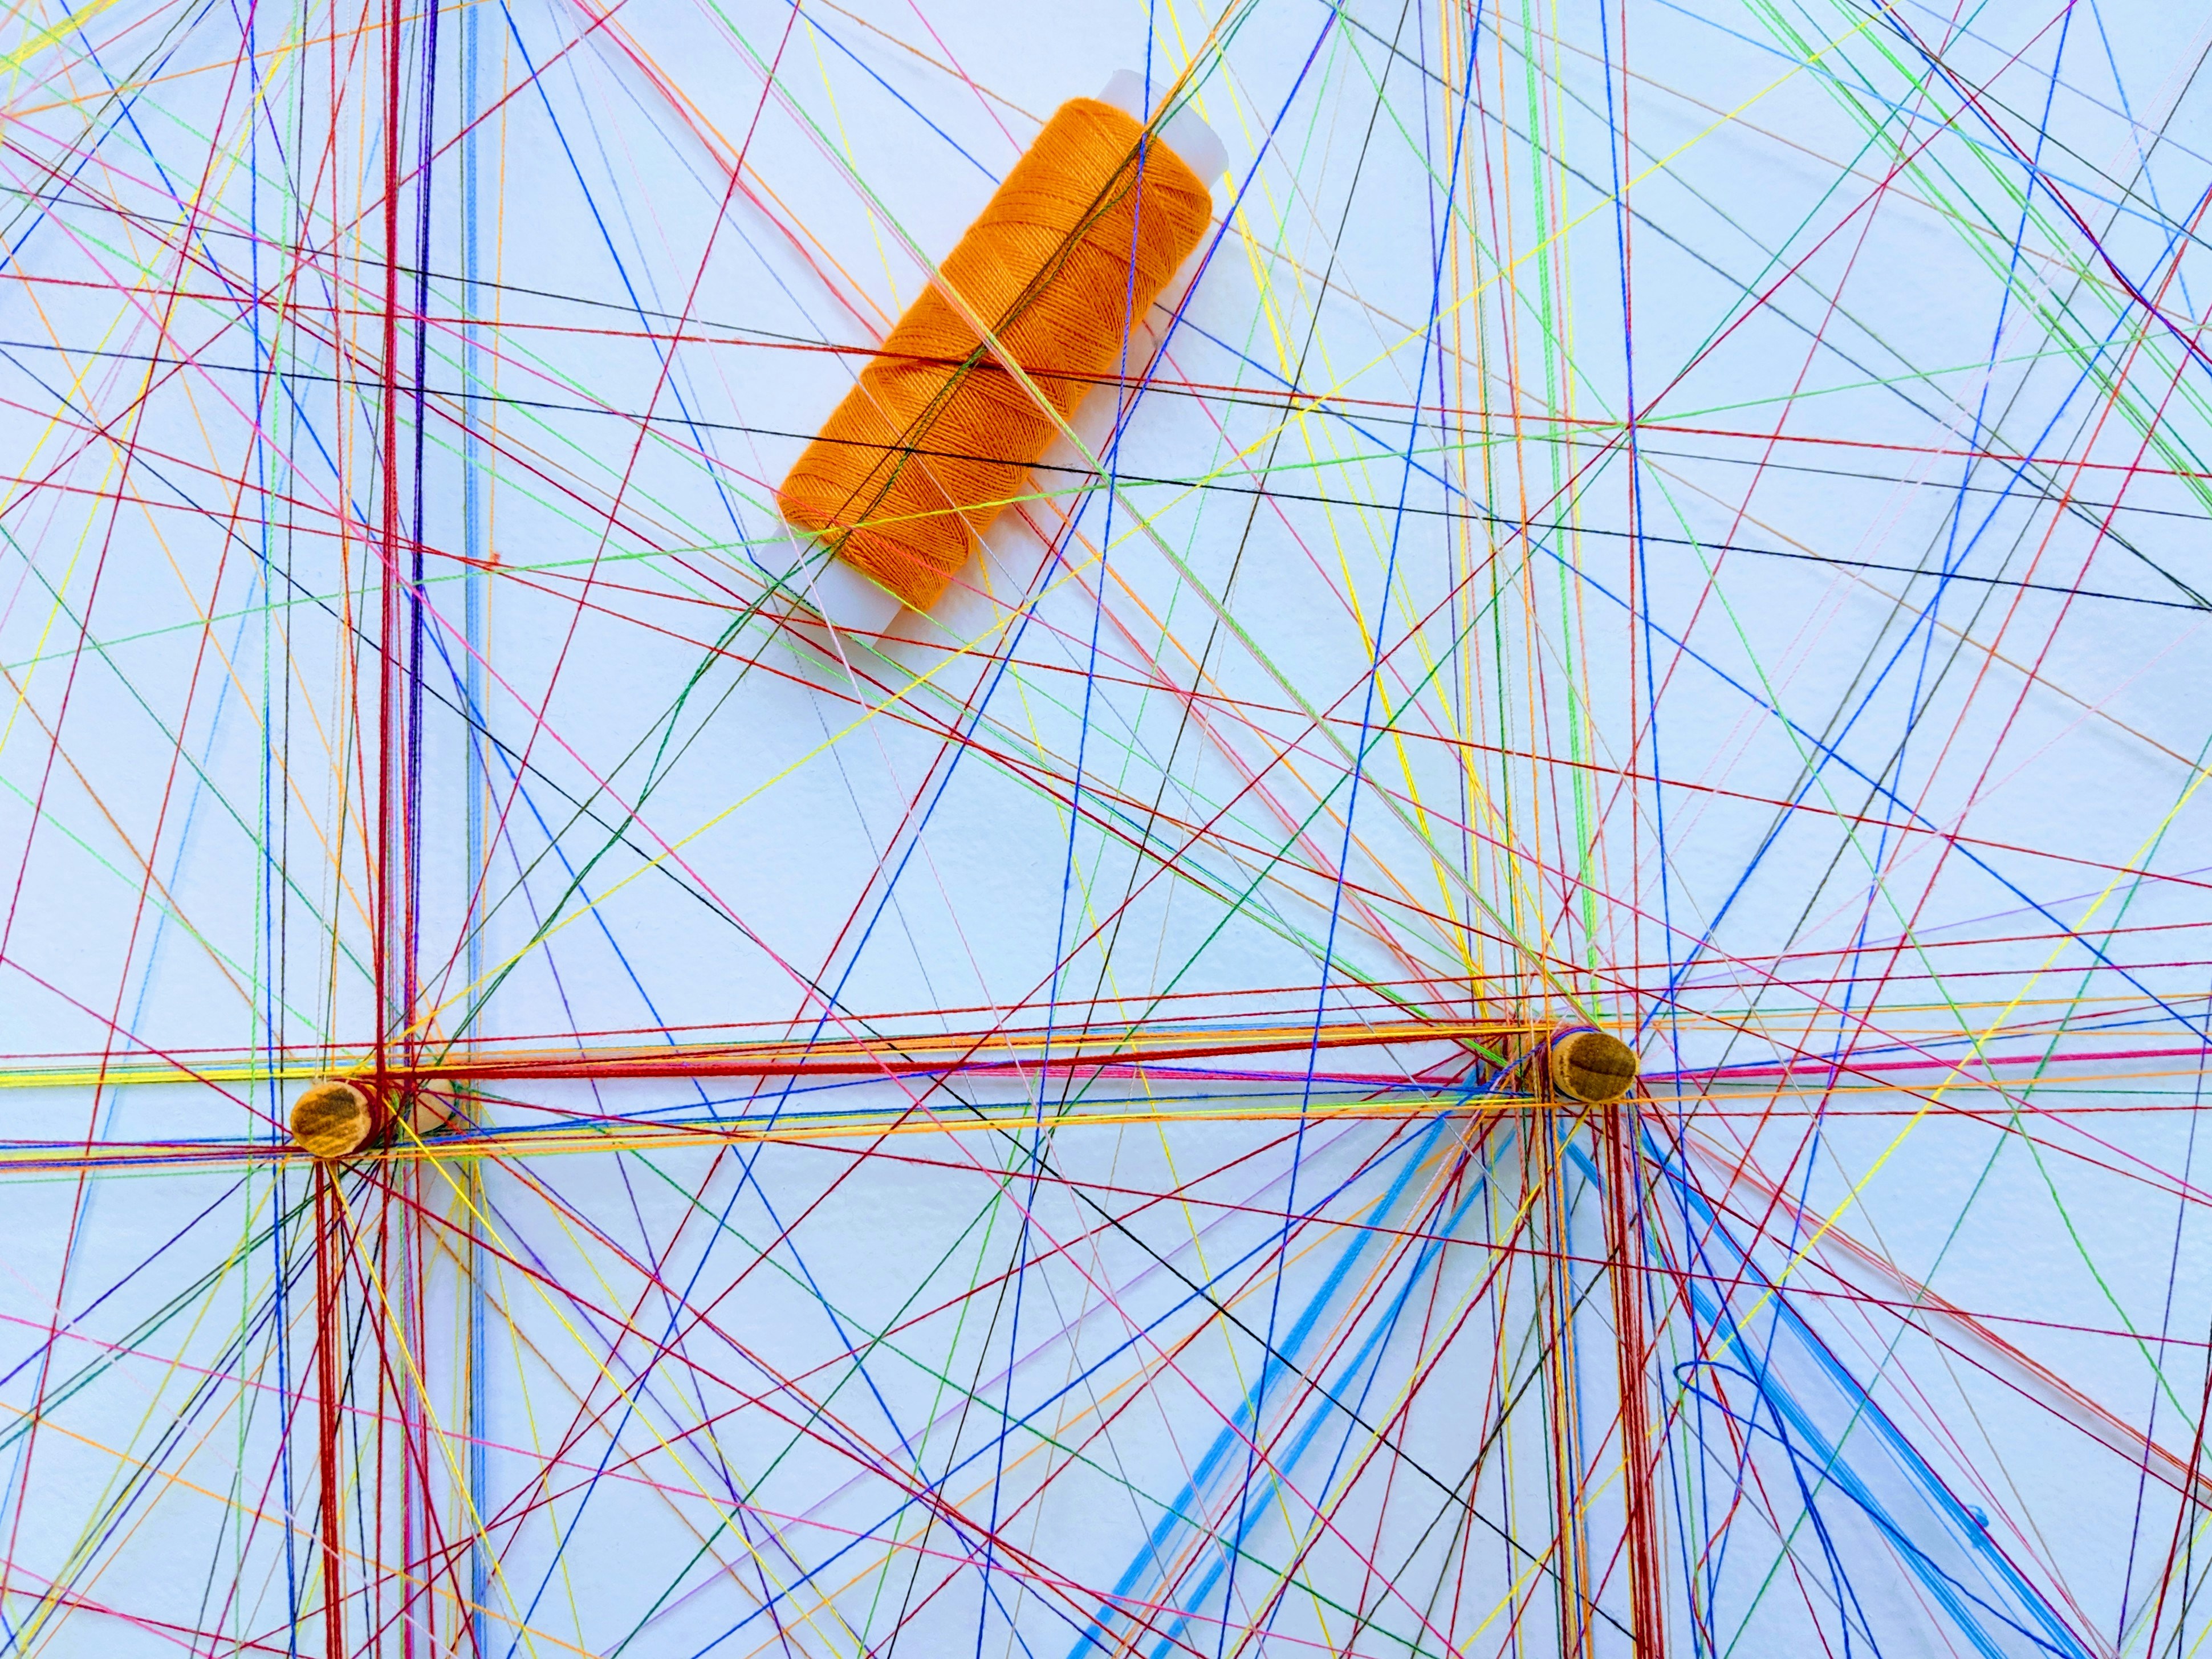 Ein Netz aus verschiedenfarbigen Bindfäden, eine Garnrolle mit orangefarbenem Bindfaden liegt darin